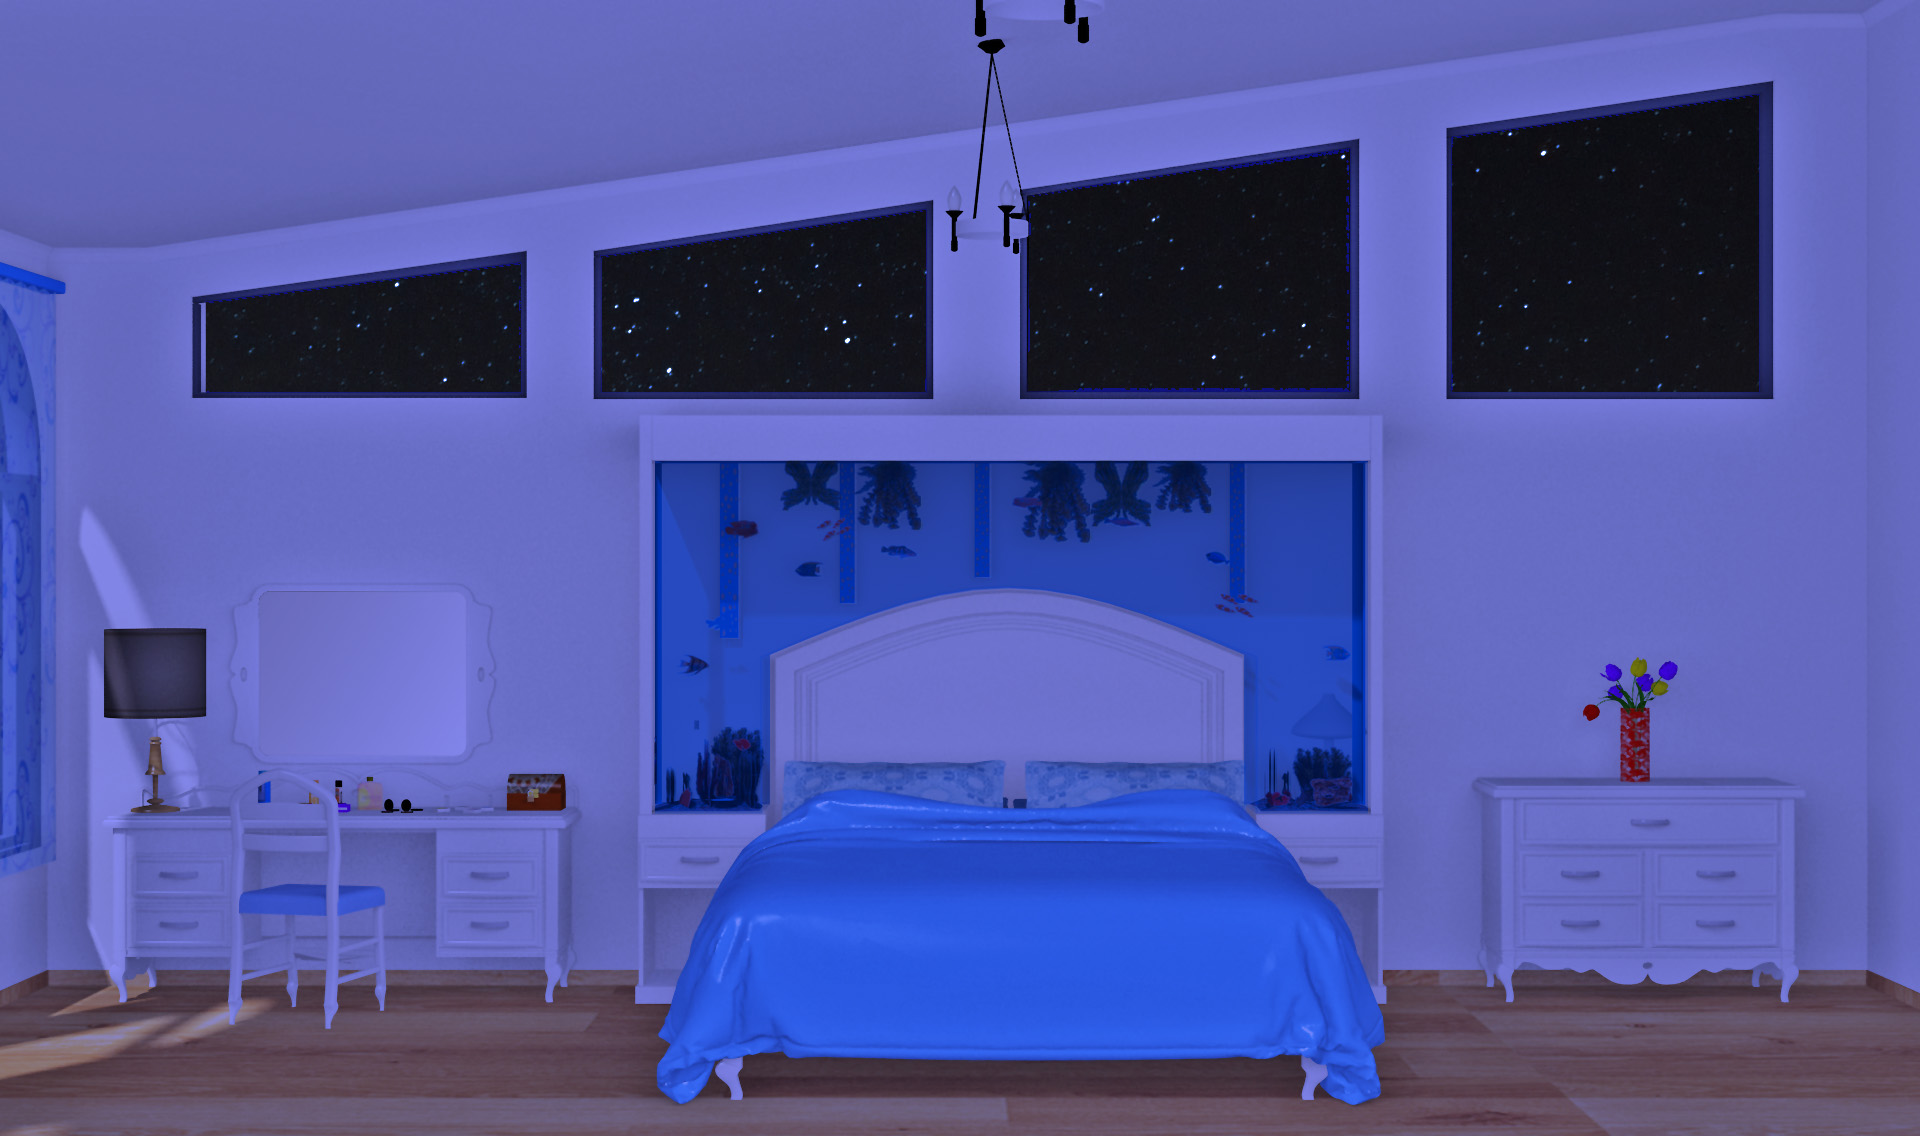 INT. AQUA BEDROOM 2 STARS – NIGHT